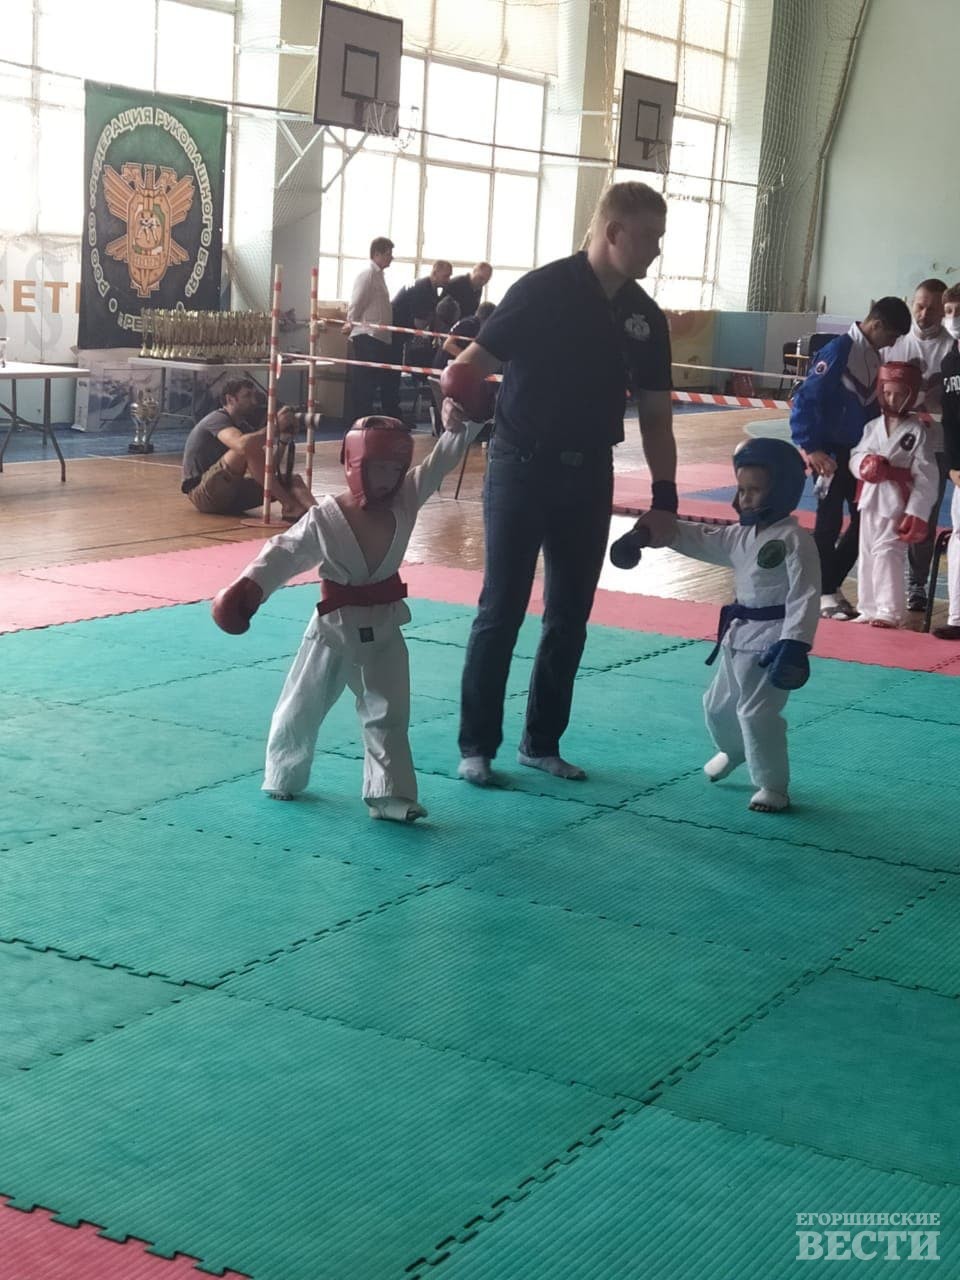 Александр Федотов в категории до 21 кг. и возрасте 6-7 лет стал победителем турнира